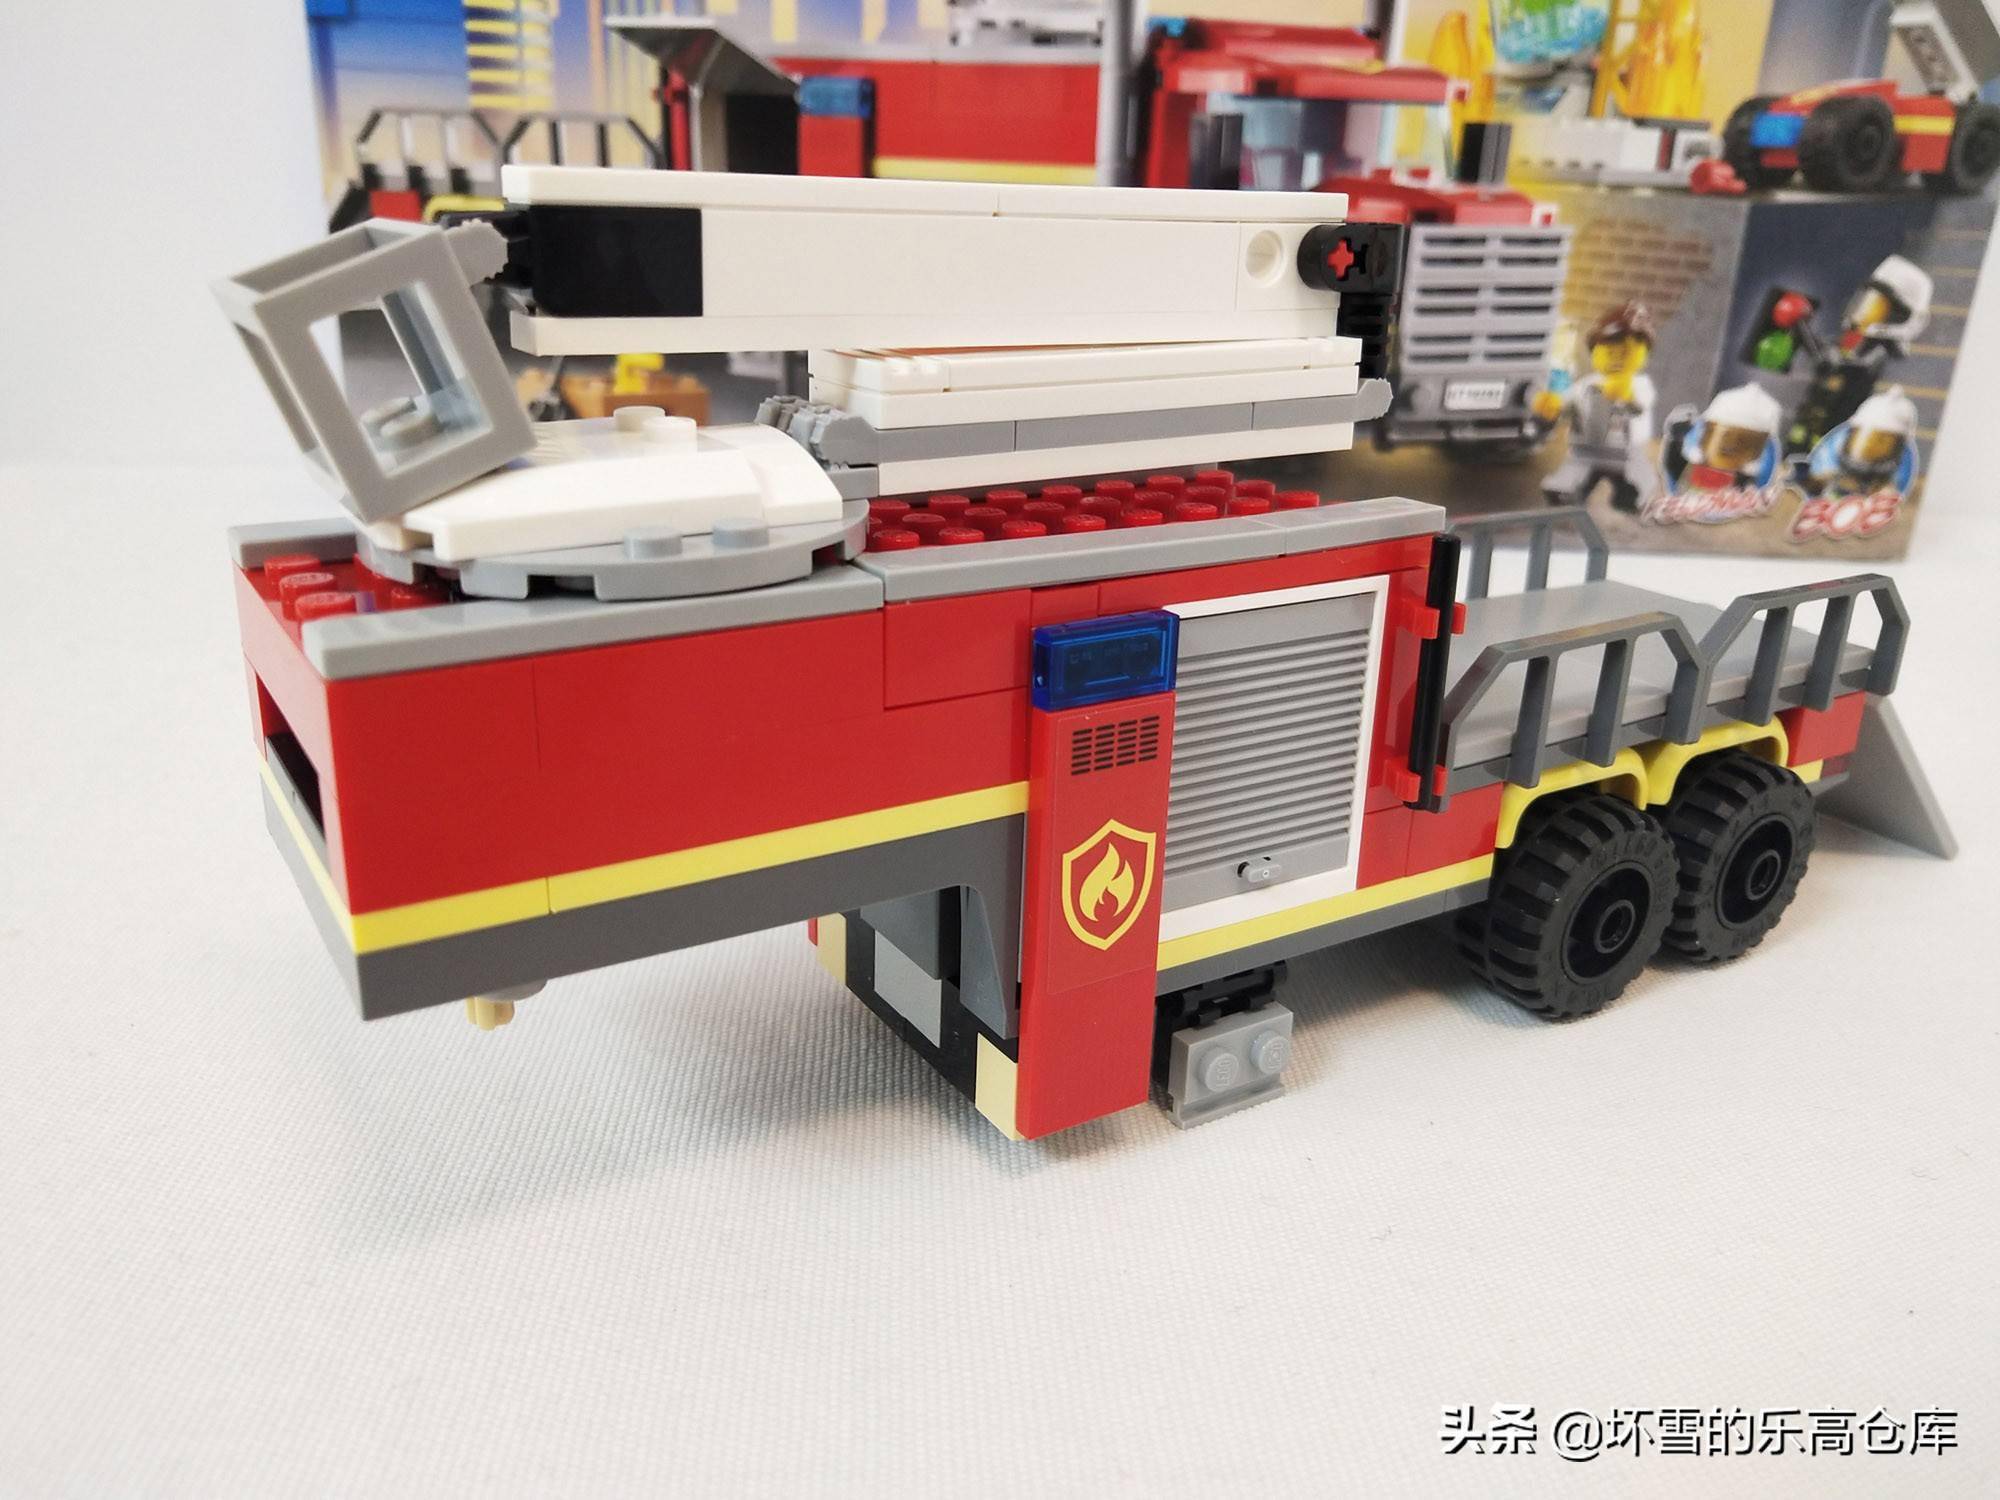 喜欢消防车的朋友这款乐高60282消防移动指挥车收入囊中了吗